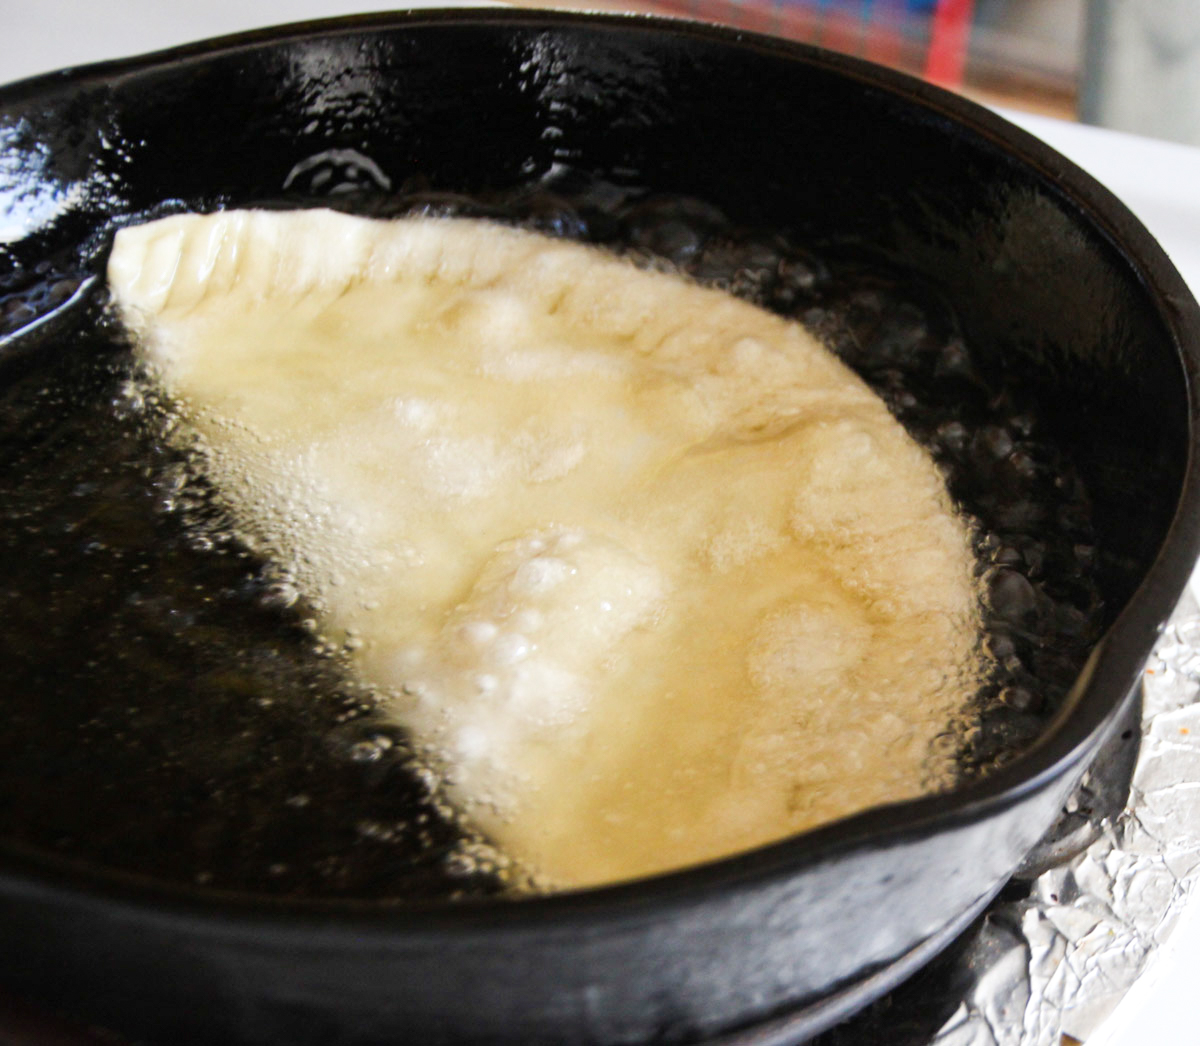 Chebureki pie deep frying in skillet.